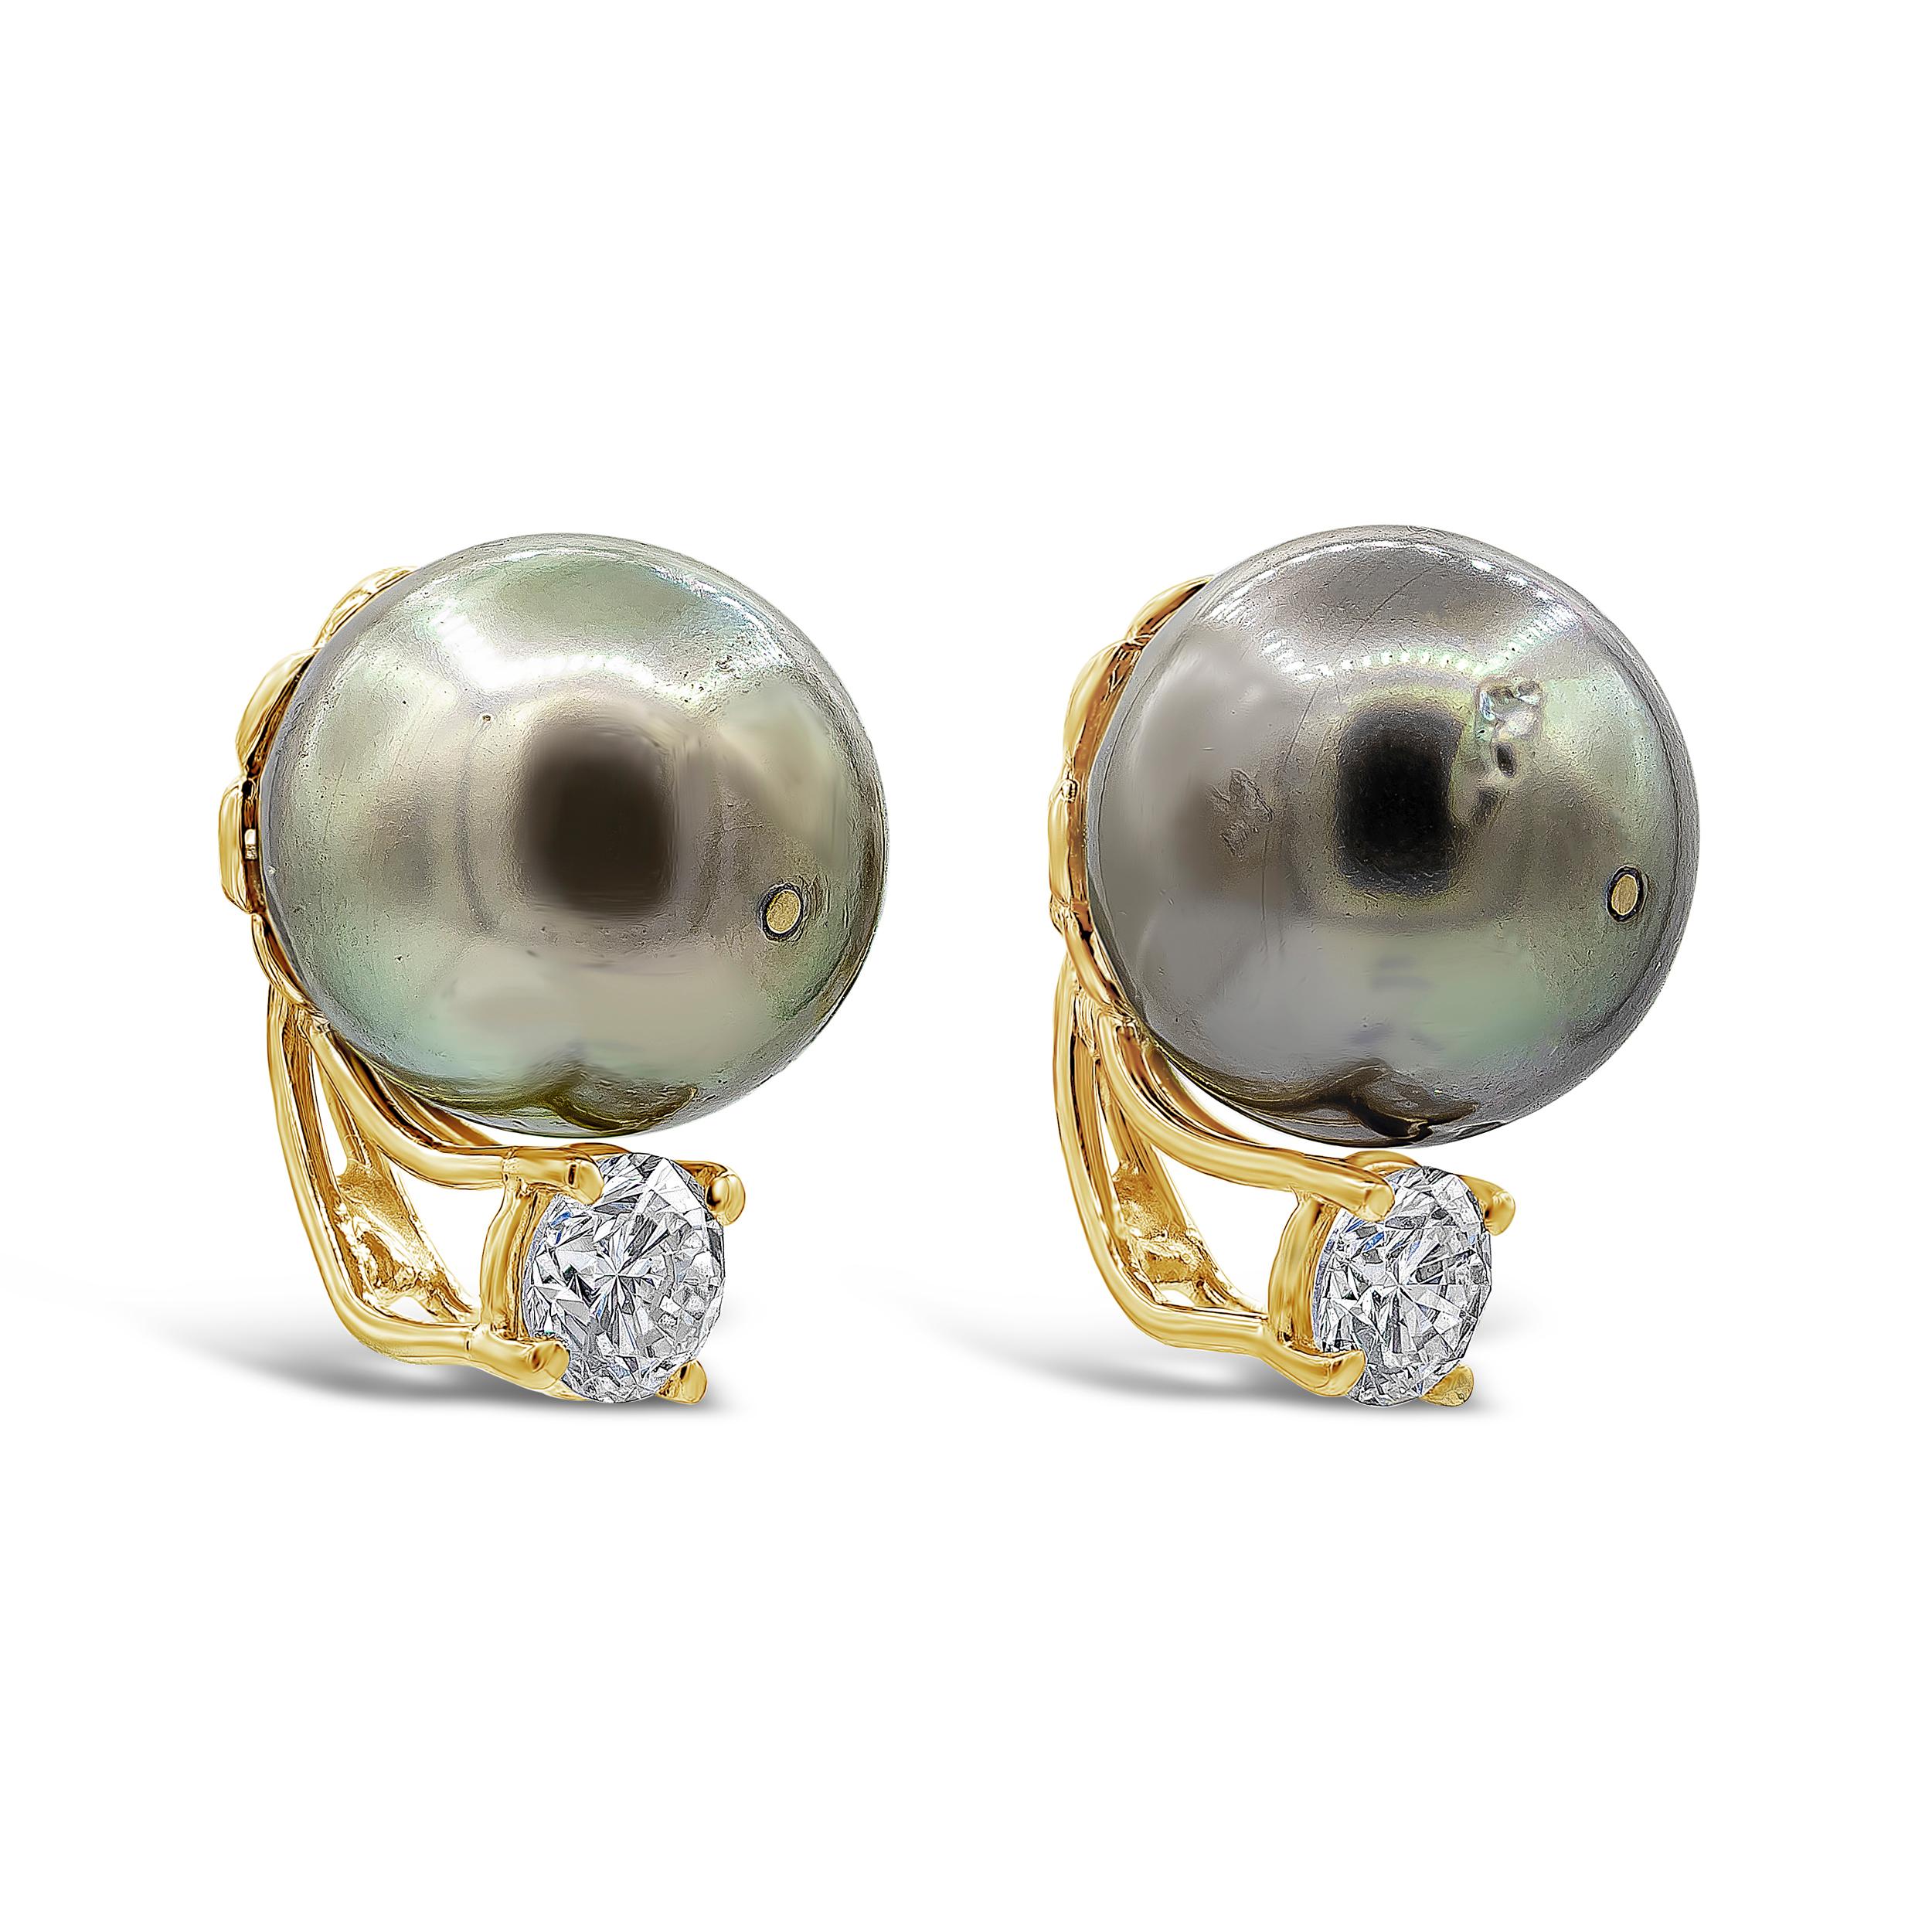 Ein schlichtes, elegantes Paar Ohrringe aus 12 mm großen Tahiti-Perlen, akzentuiert durch runde Diamanten im Brillantschliff von insgesamt 0,88 Karat. Hergestellt aus 18 Karat Gelbgold.

Roman Malakov ist ein Unternehmen, das sich darauf